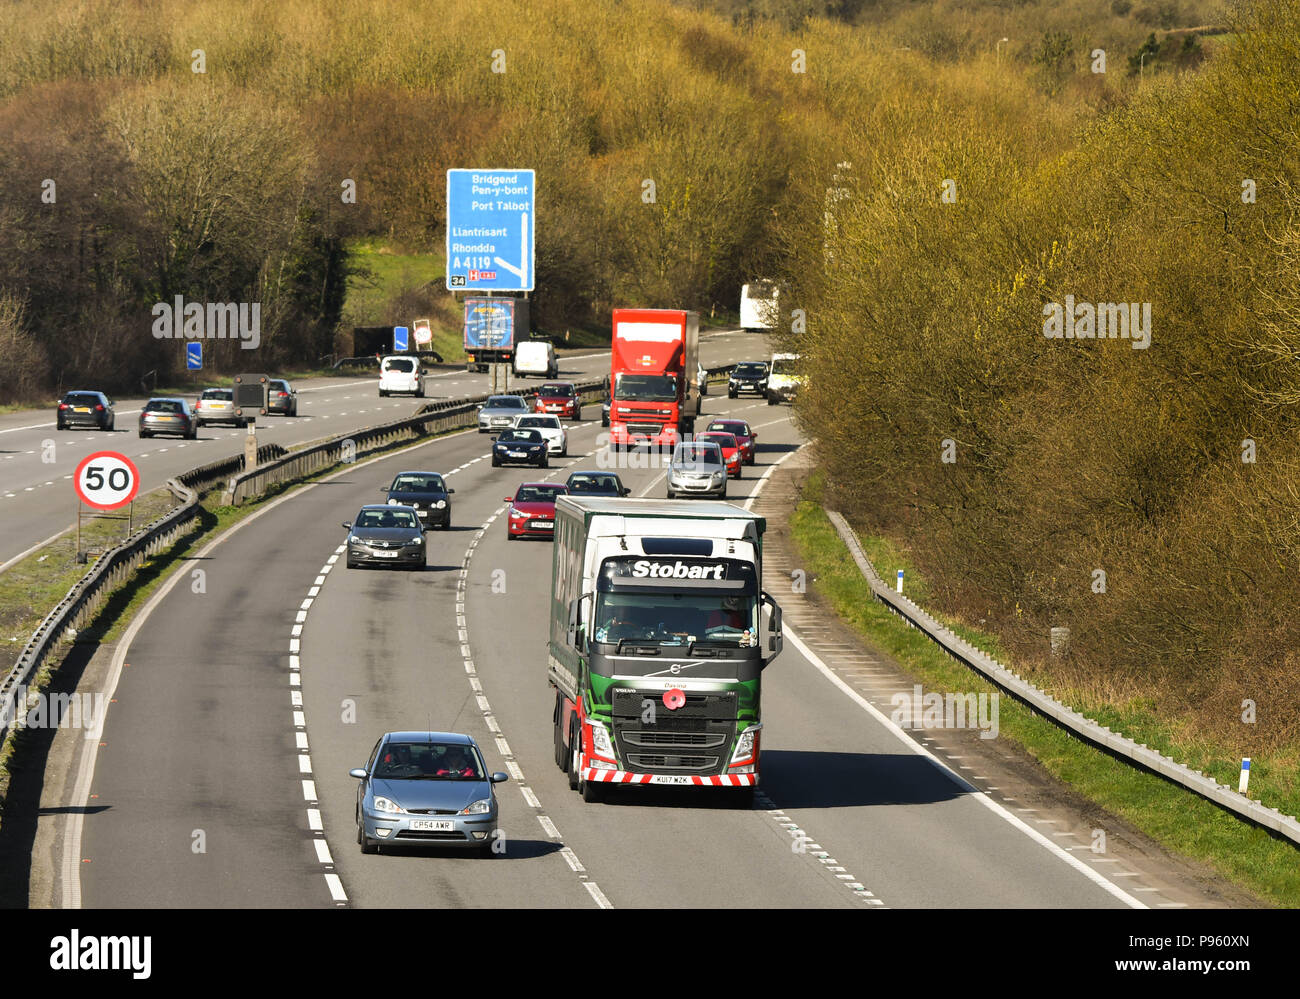 Le trafic sur l'autoroute M4 près de la sortie 34 à Miskin à la périphérie de Cardiff. Un camion utilisé par Eddie Stobart est un des véhicules Banque D'Images